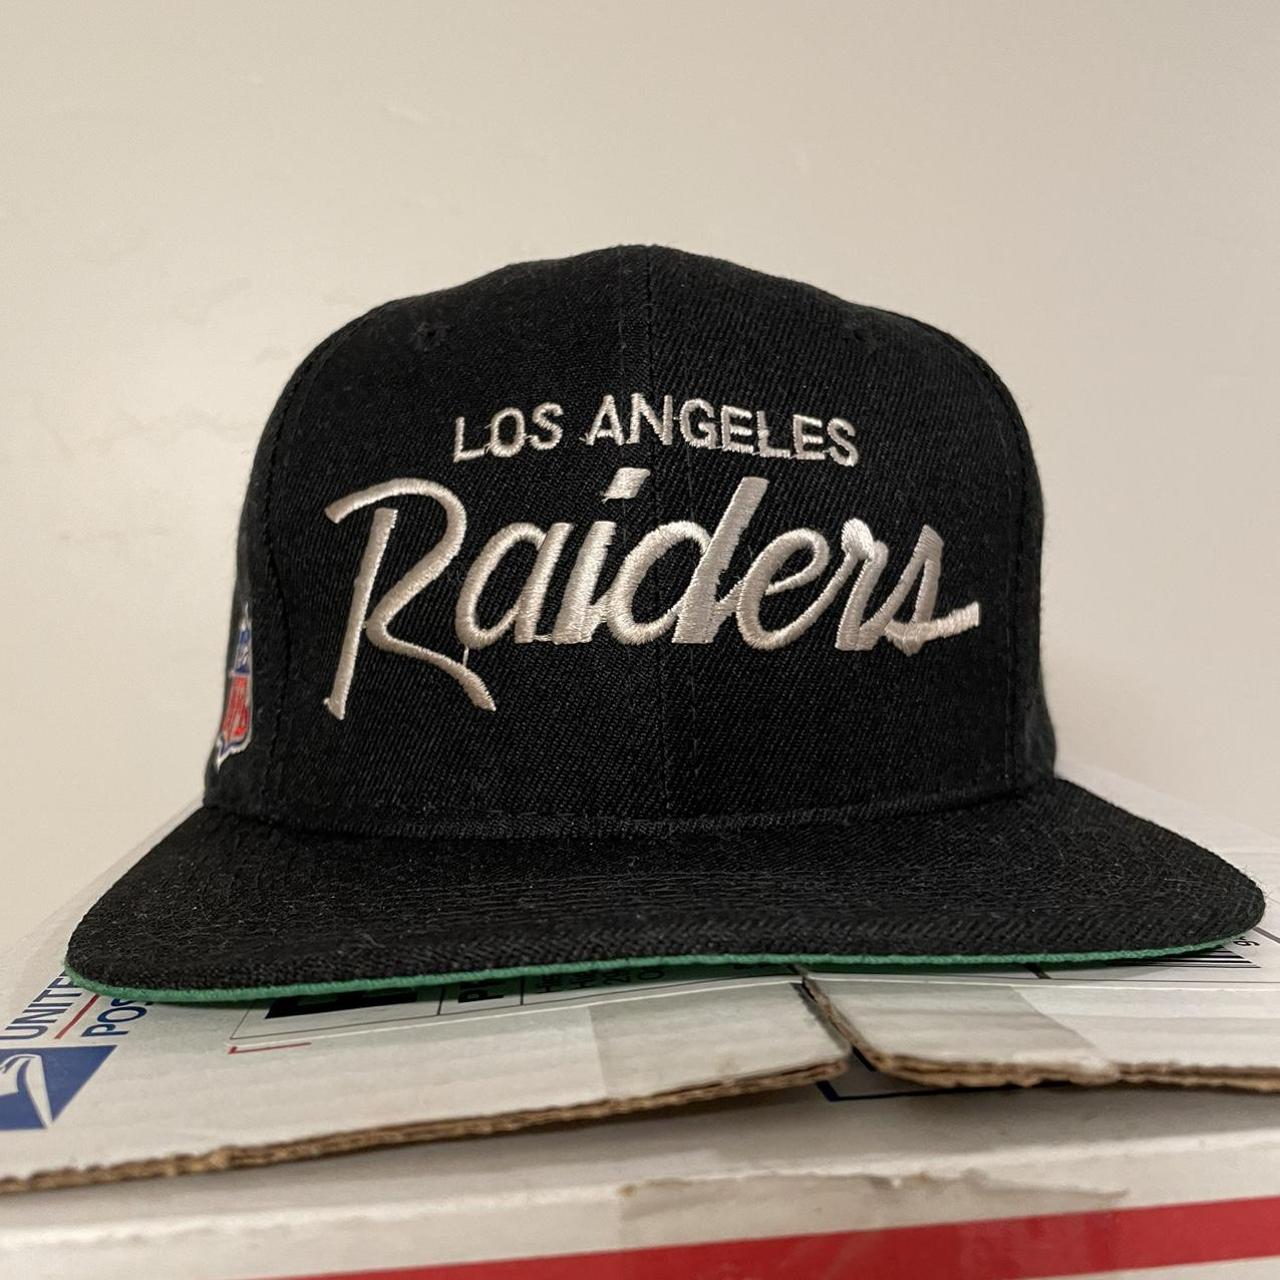 Vintage 90s Los Angeles Raiders Wool Snapback Hat... - Depop